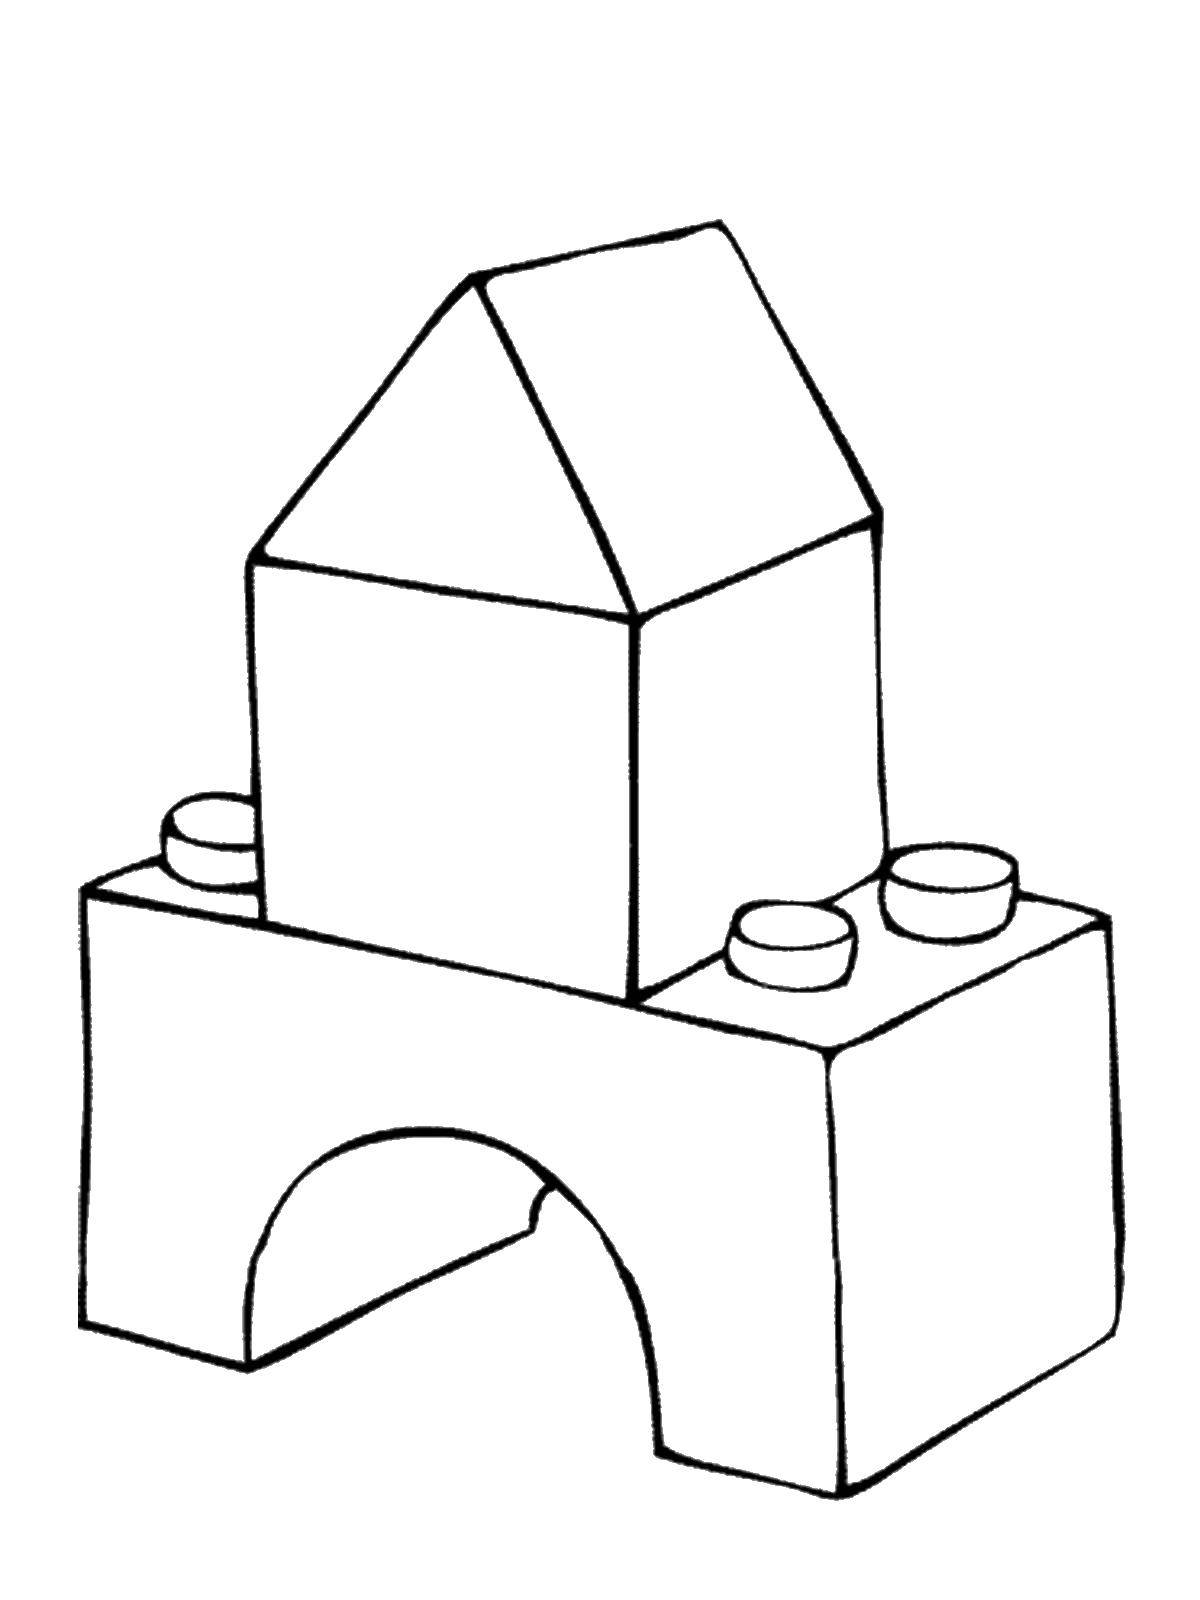 Раскраска игрушки домик, кубики, крыша для детей (крыша)